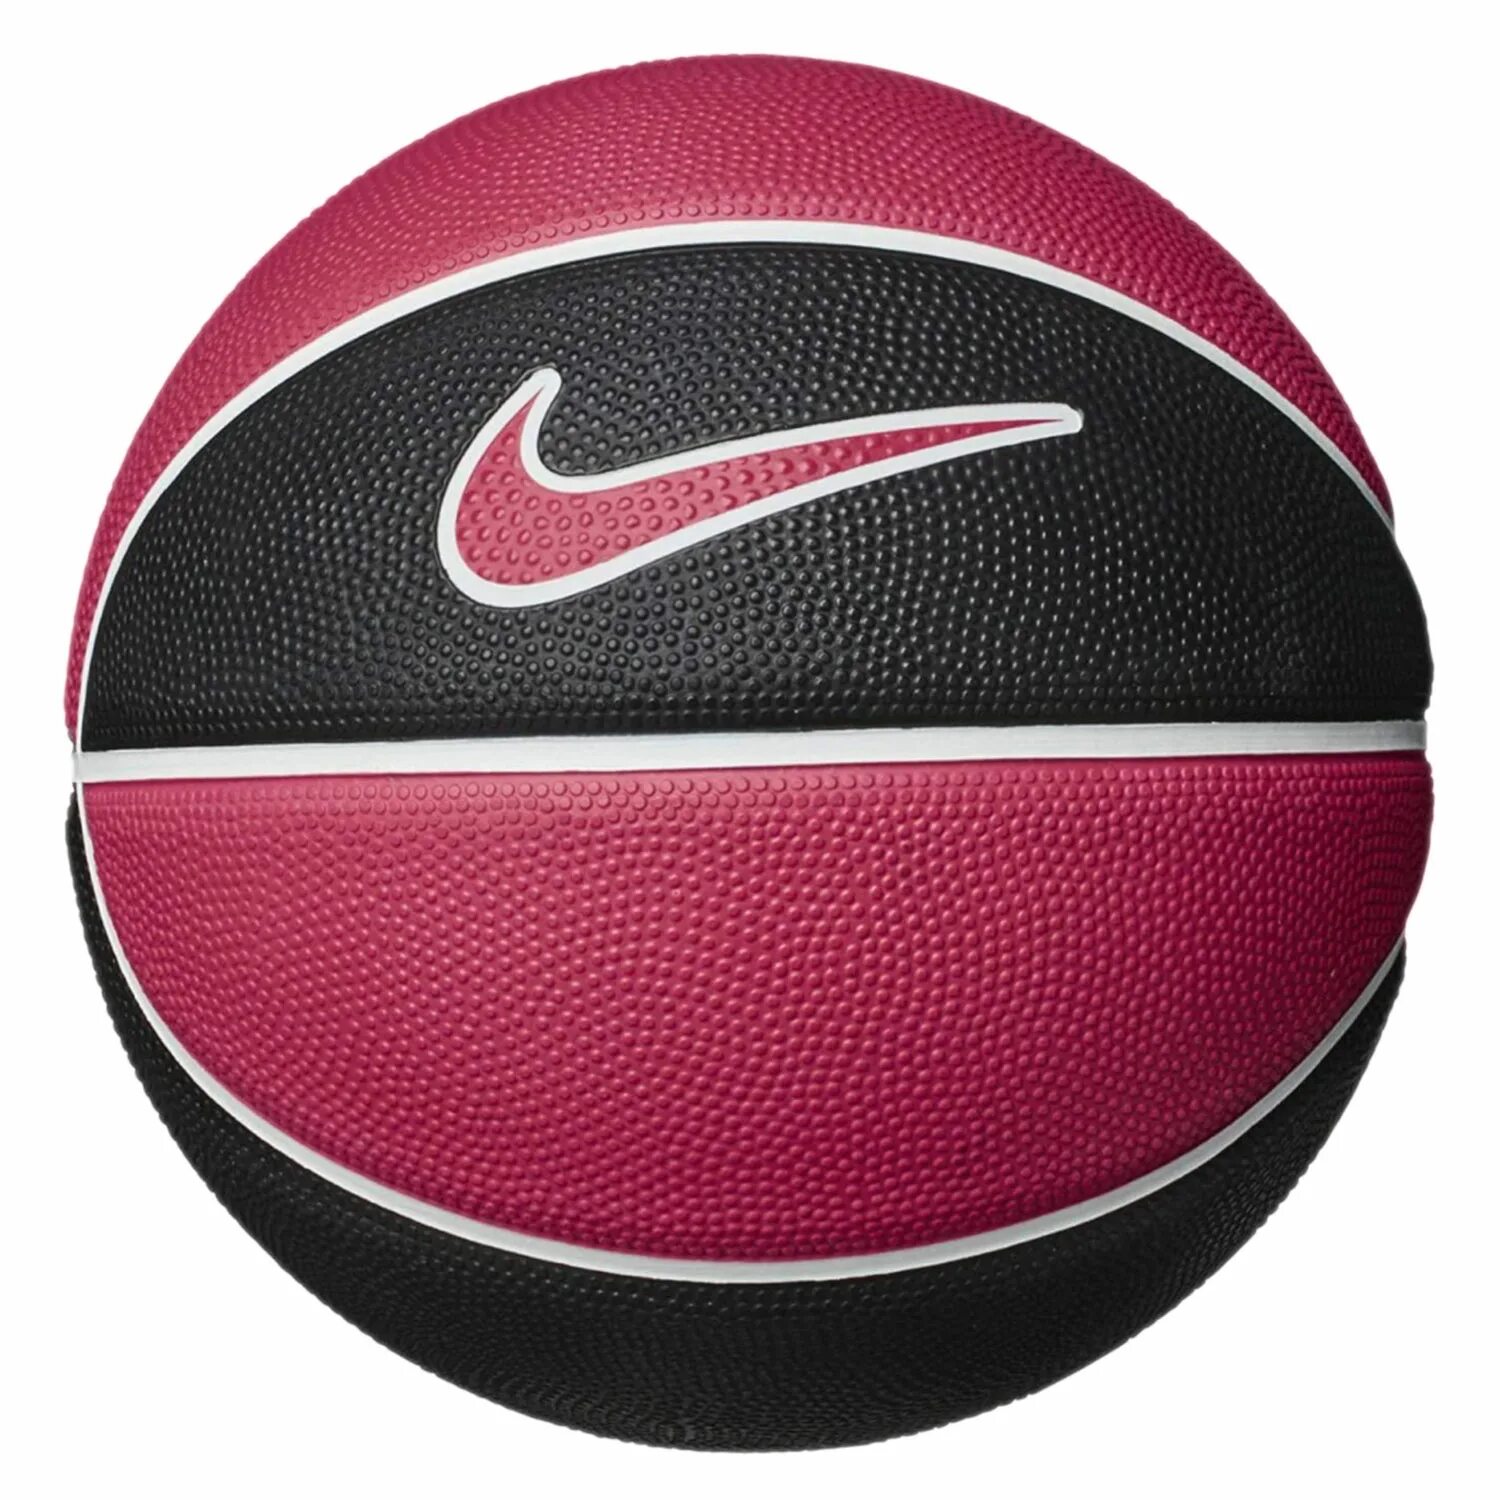 Спортивные магазины баскетбольные мячи. Черный баскетбольный мяч найк. Мяч баскетбольный найк 6. Розовый мяч Nike баскетбольный 6. Баскетбольный мяч найк розовый.